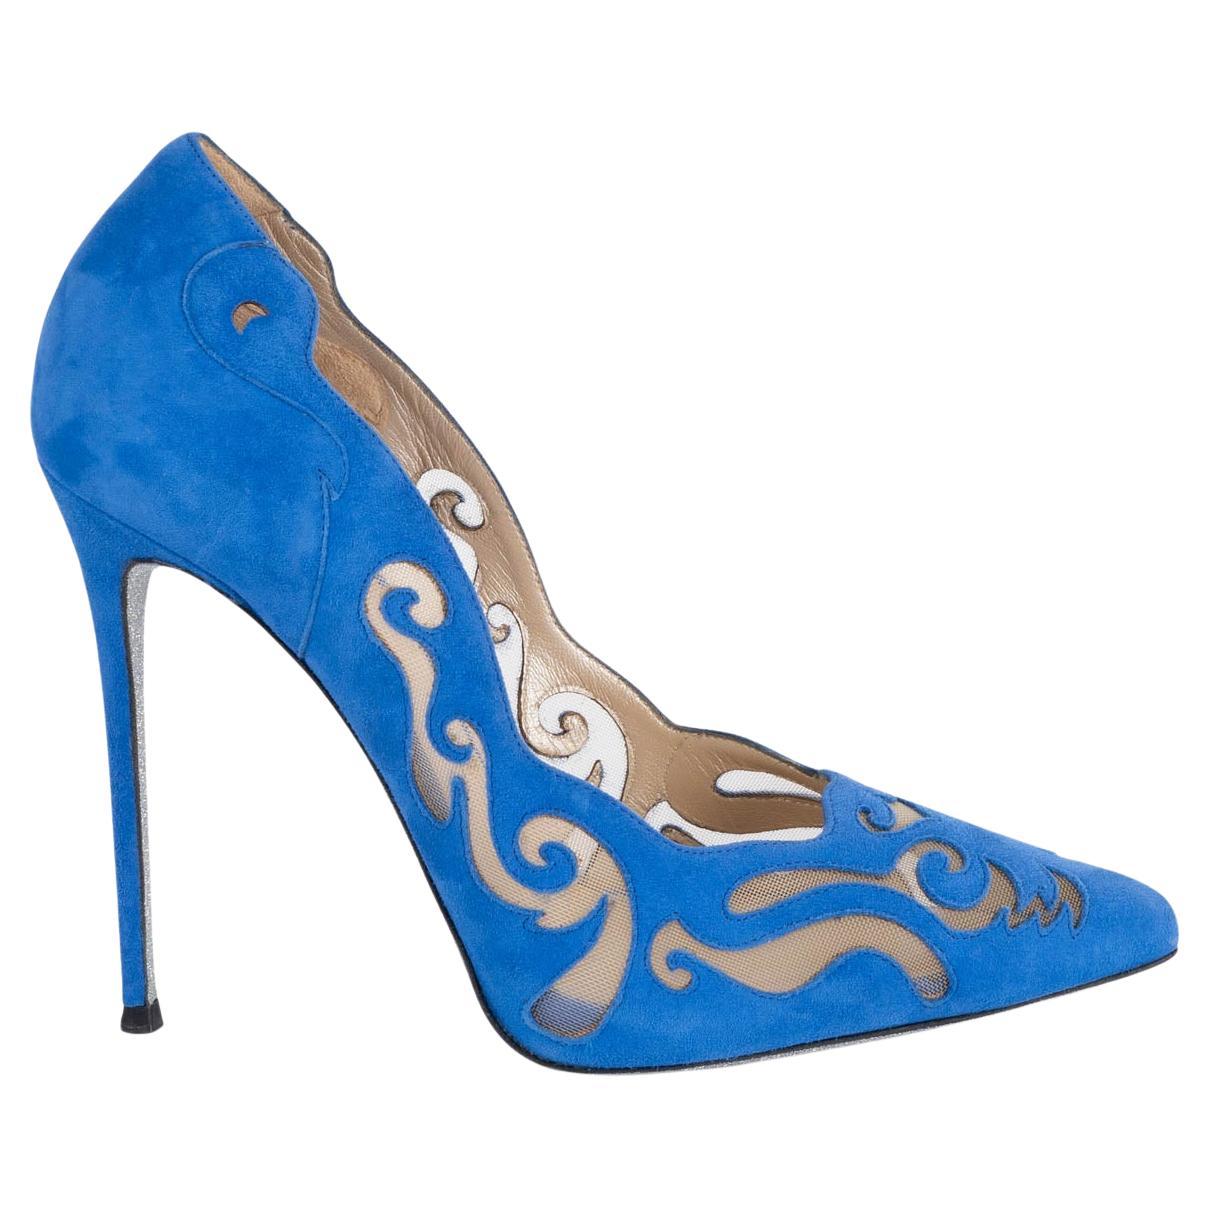 RENE CAOVILLA Chaussures à talons en daim bleu cobalt ILLUSION LASER-CUT 38,5 en vente